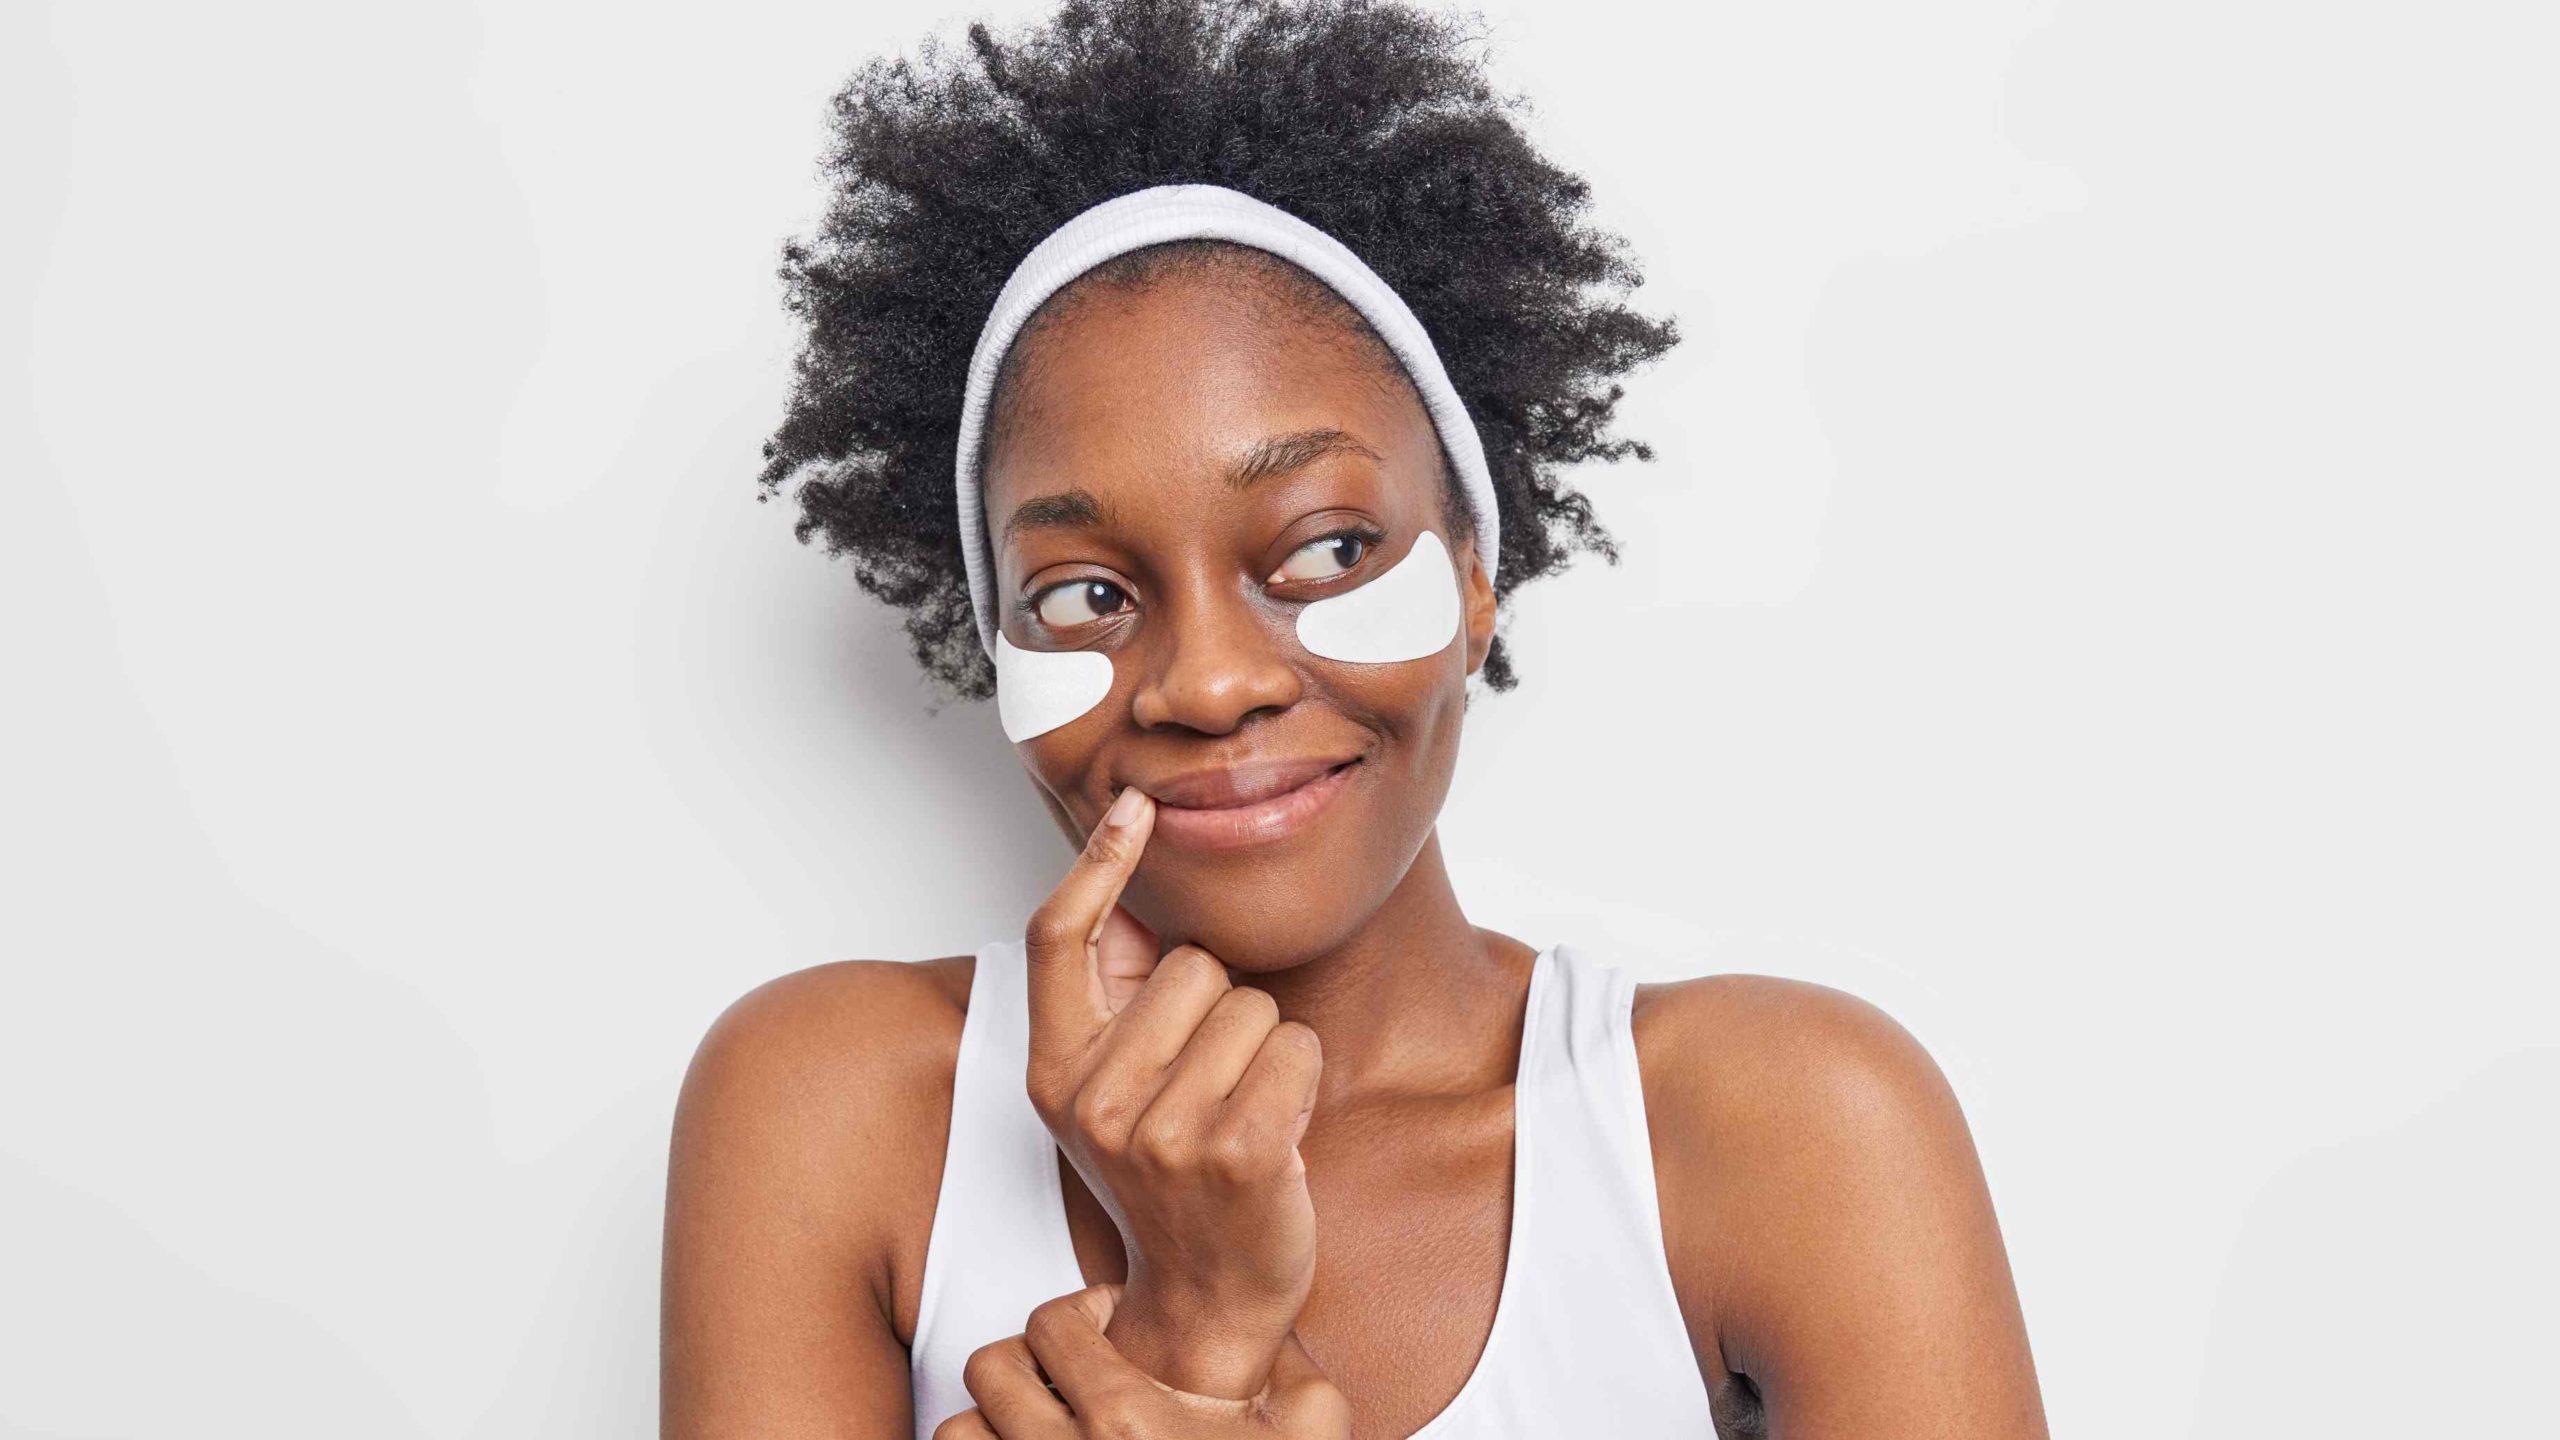 Dermatologista indica os cuidados essenciais para a pele negra no verão